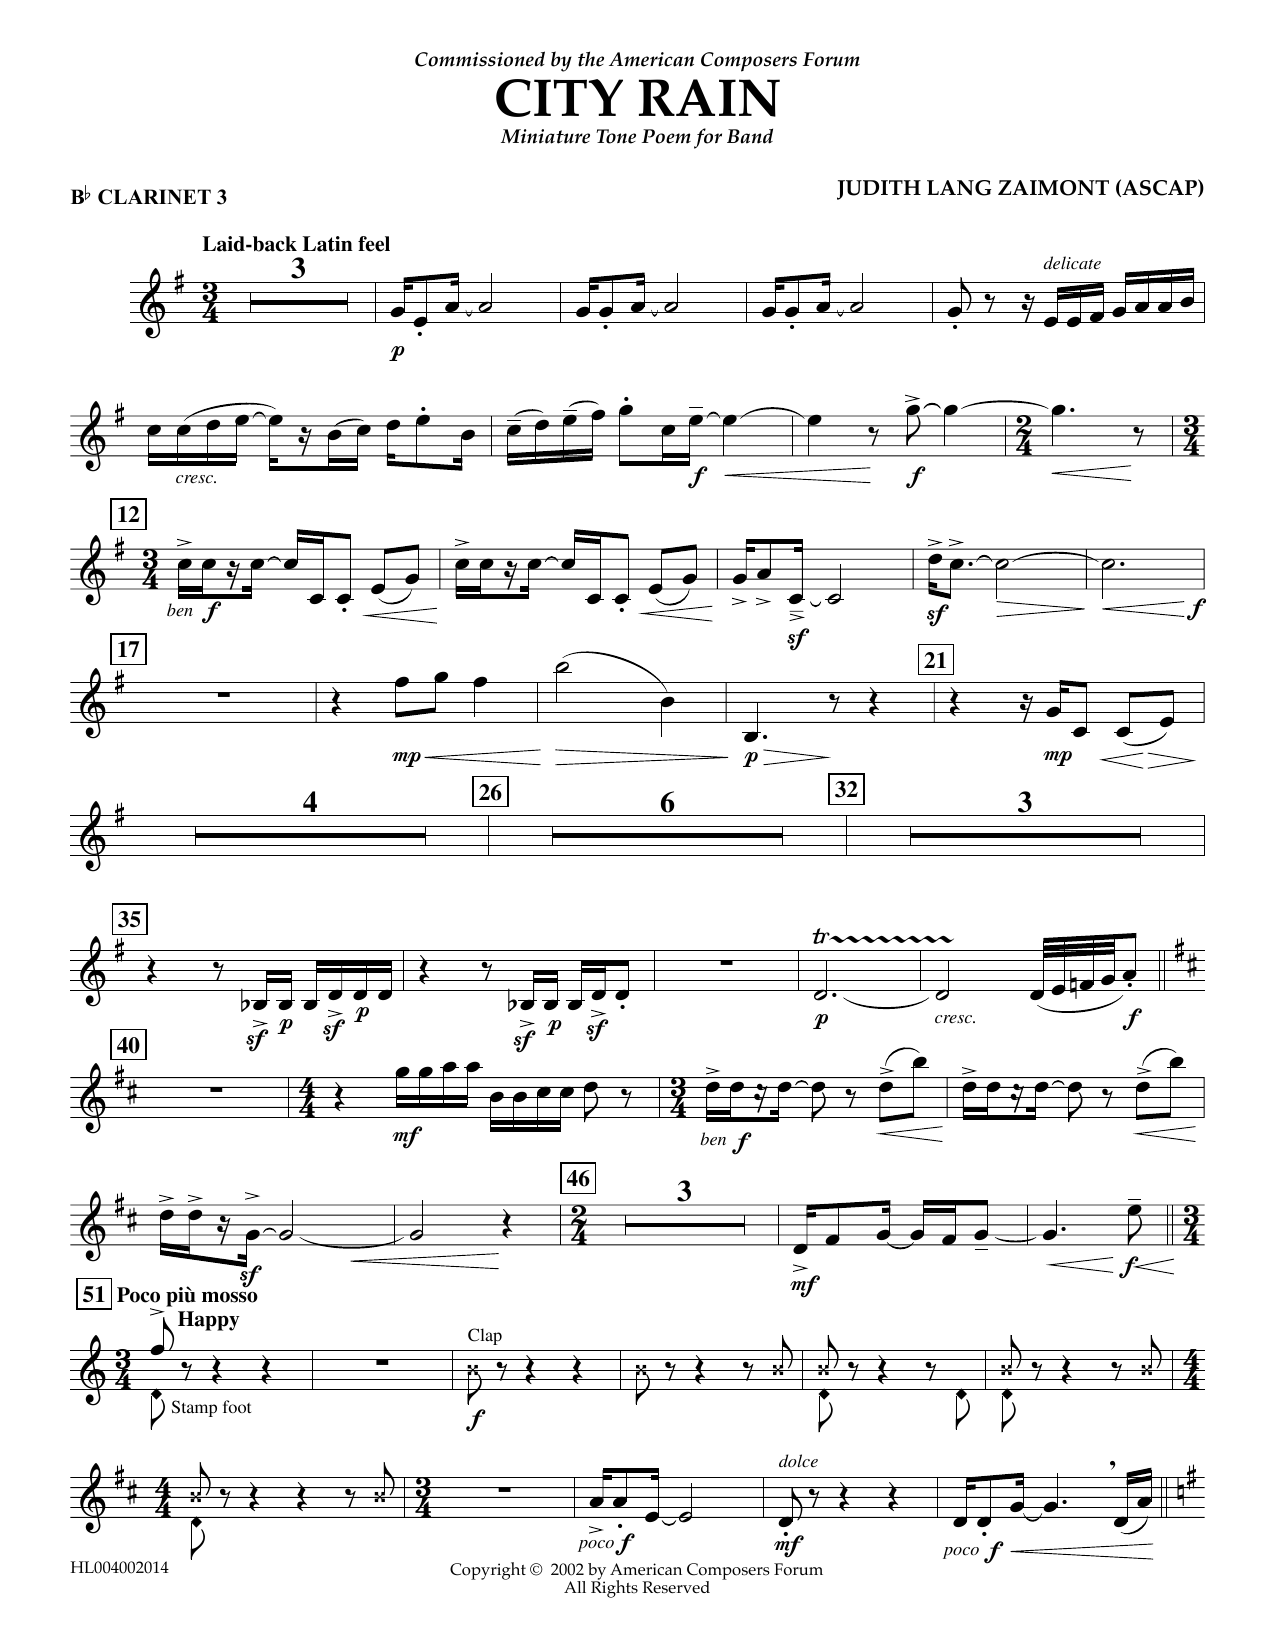 Download Judith Zaimont City Rain - Bb Clarinet 3 Sheet Music